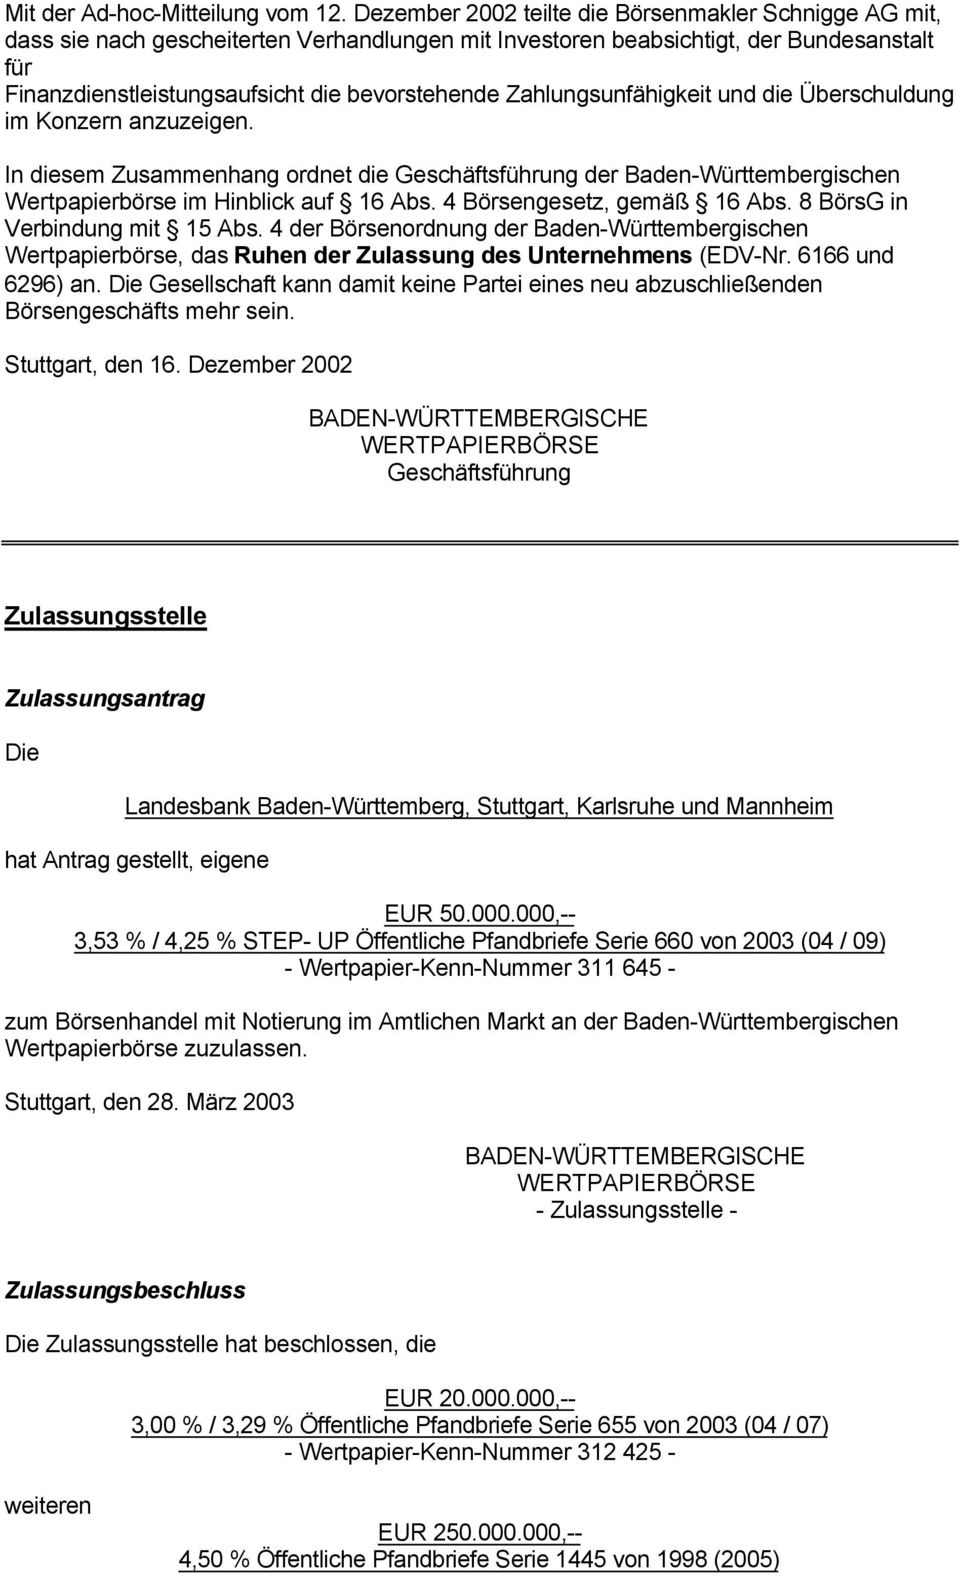 Zahlungsunfähigkeit und die Überschuldung im Konzern anzuzeigen. In diesem Zusammenhang ordnet die Geschäftsführung der Baden-Württembergischen Wertpapierbörse im Hinblick auf 16 Abs.